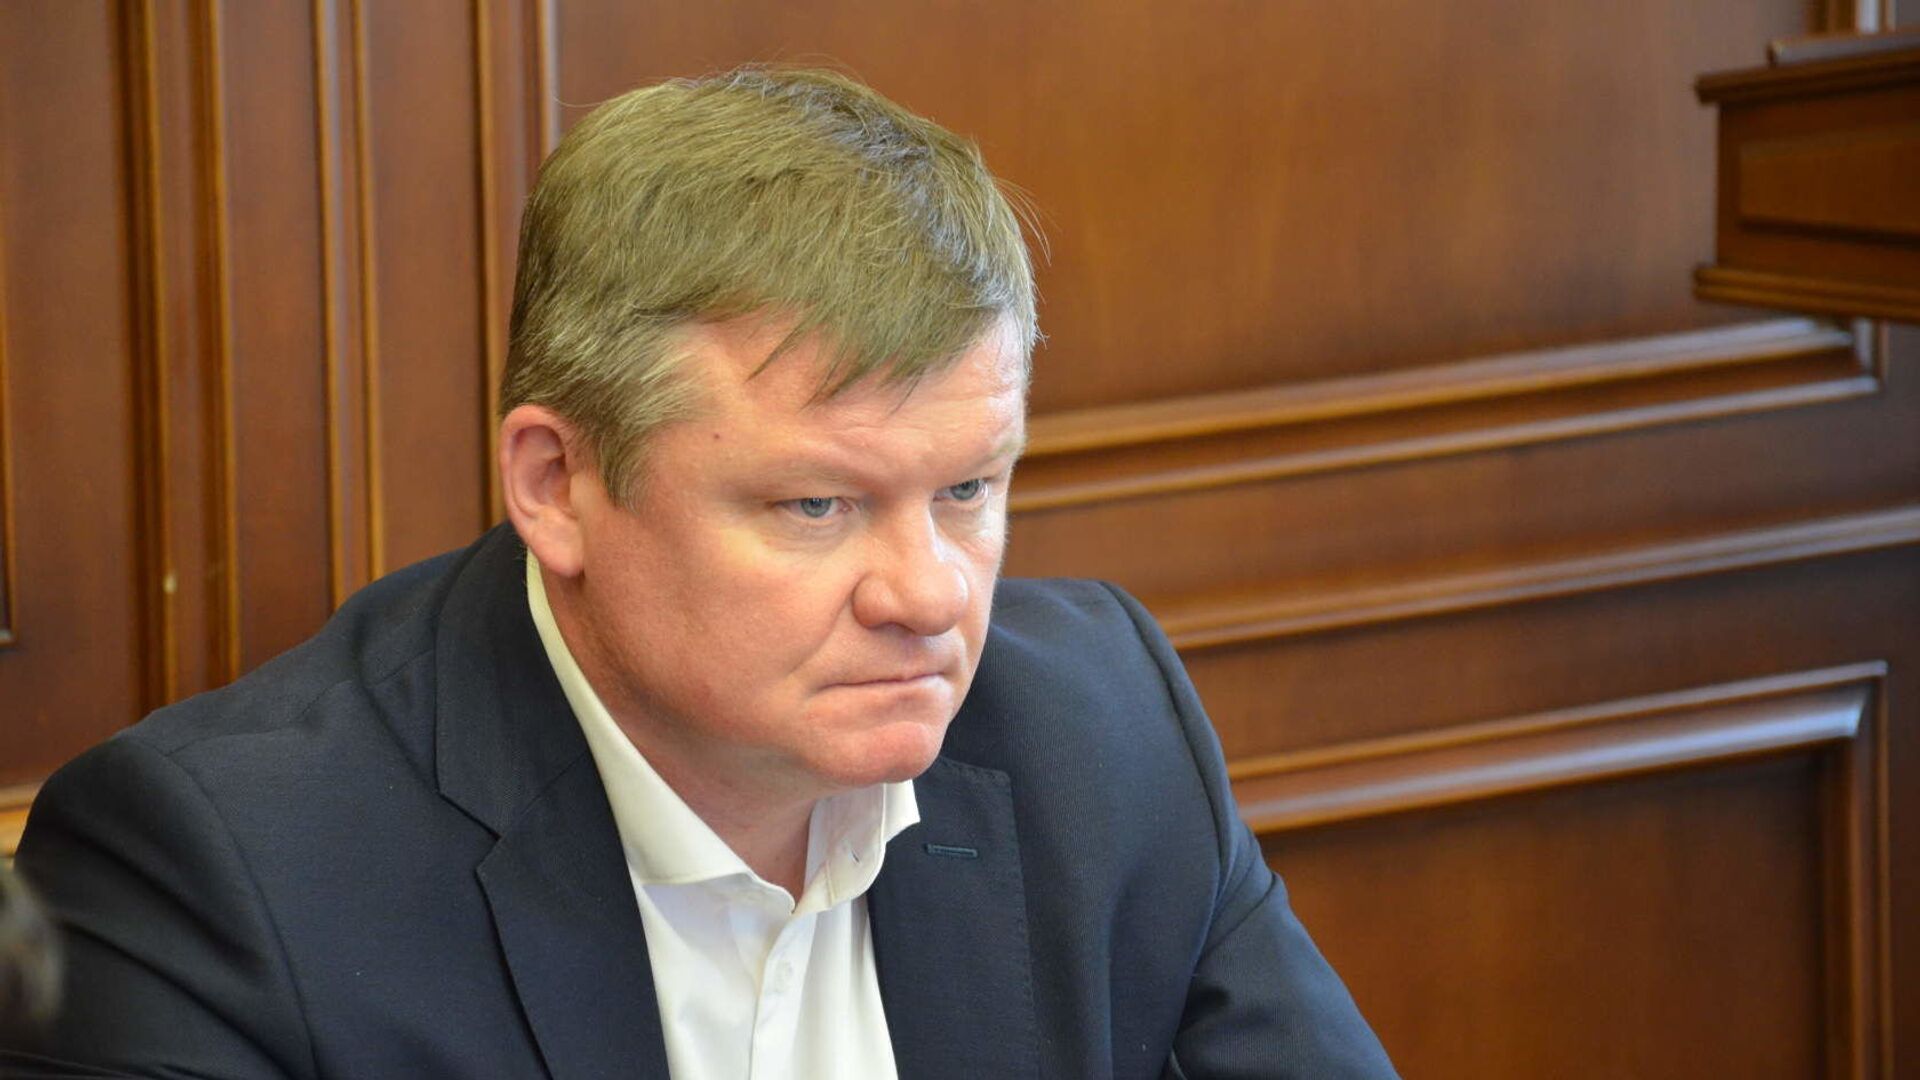 Мэр Саратова призвал выяснить причины нападения на депутата от КПРФ